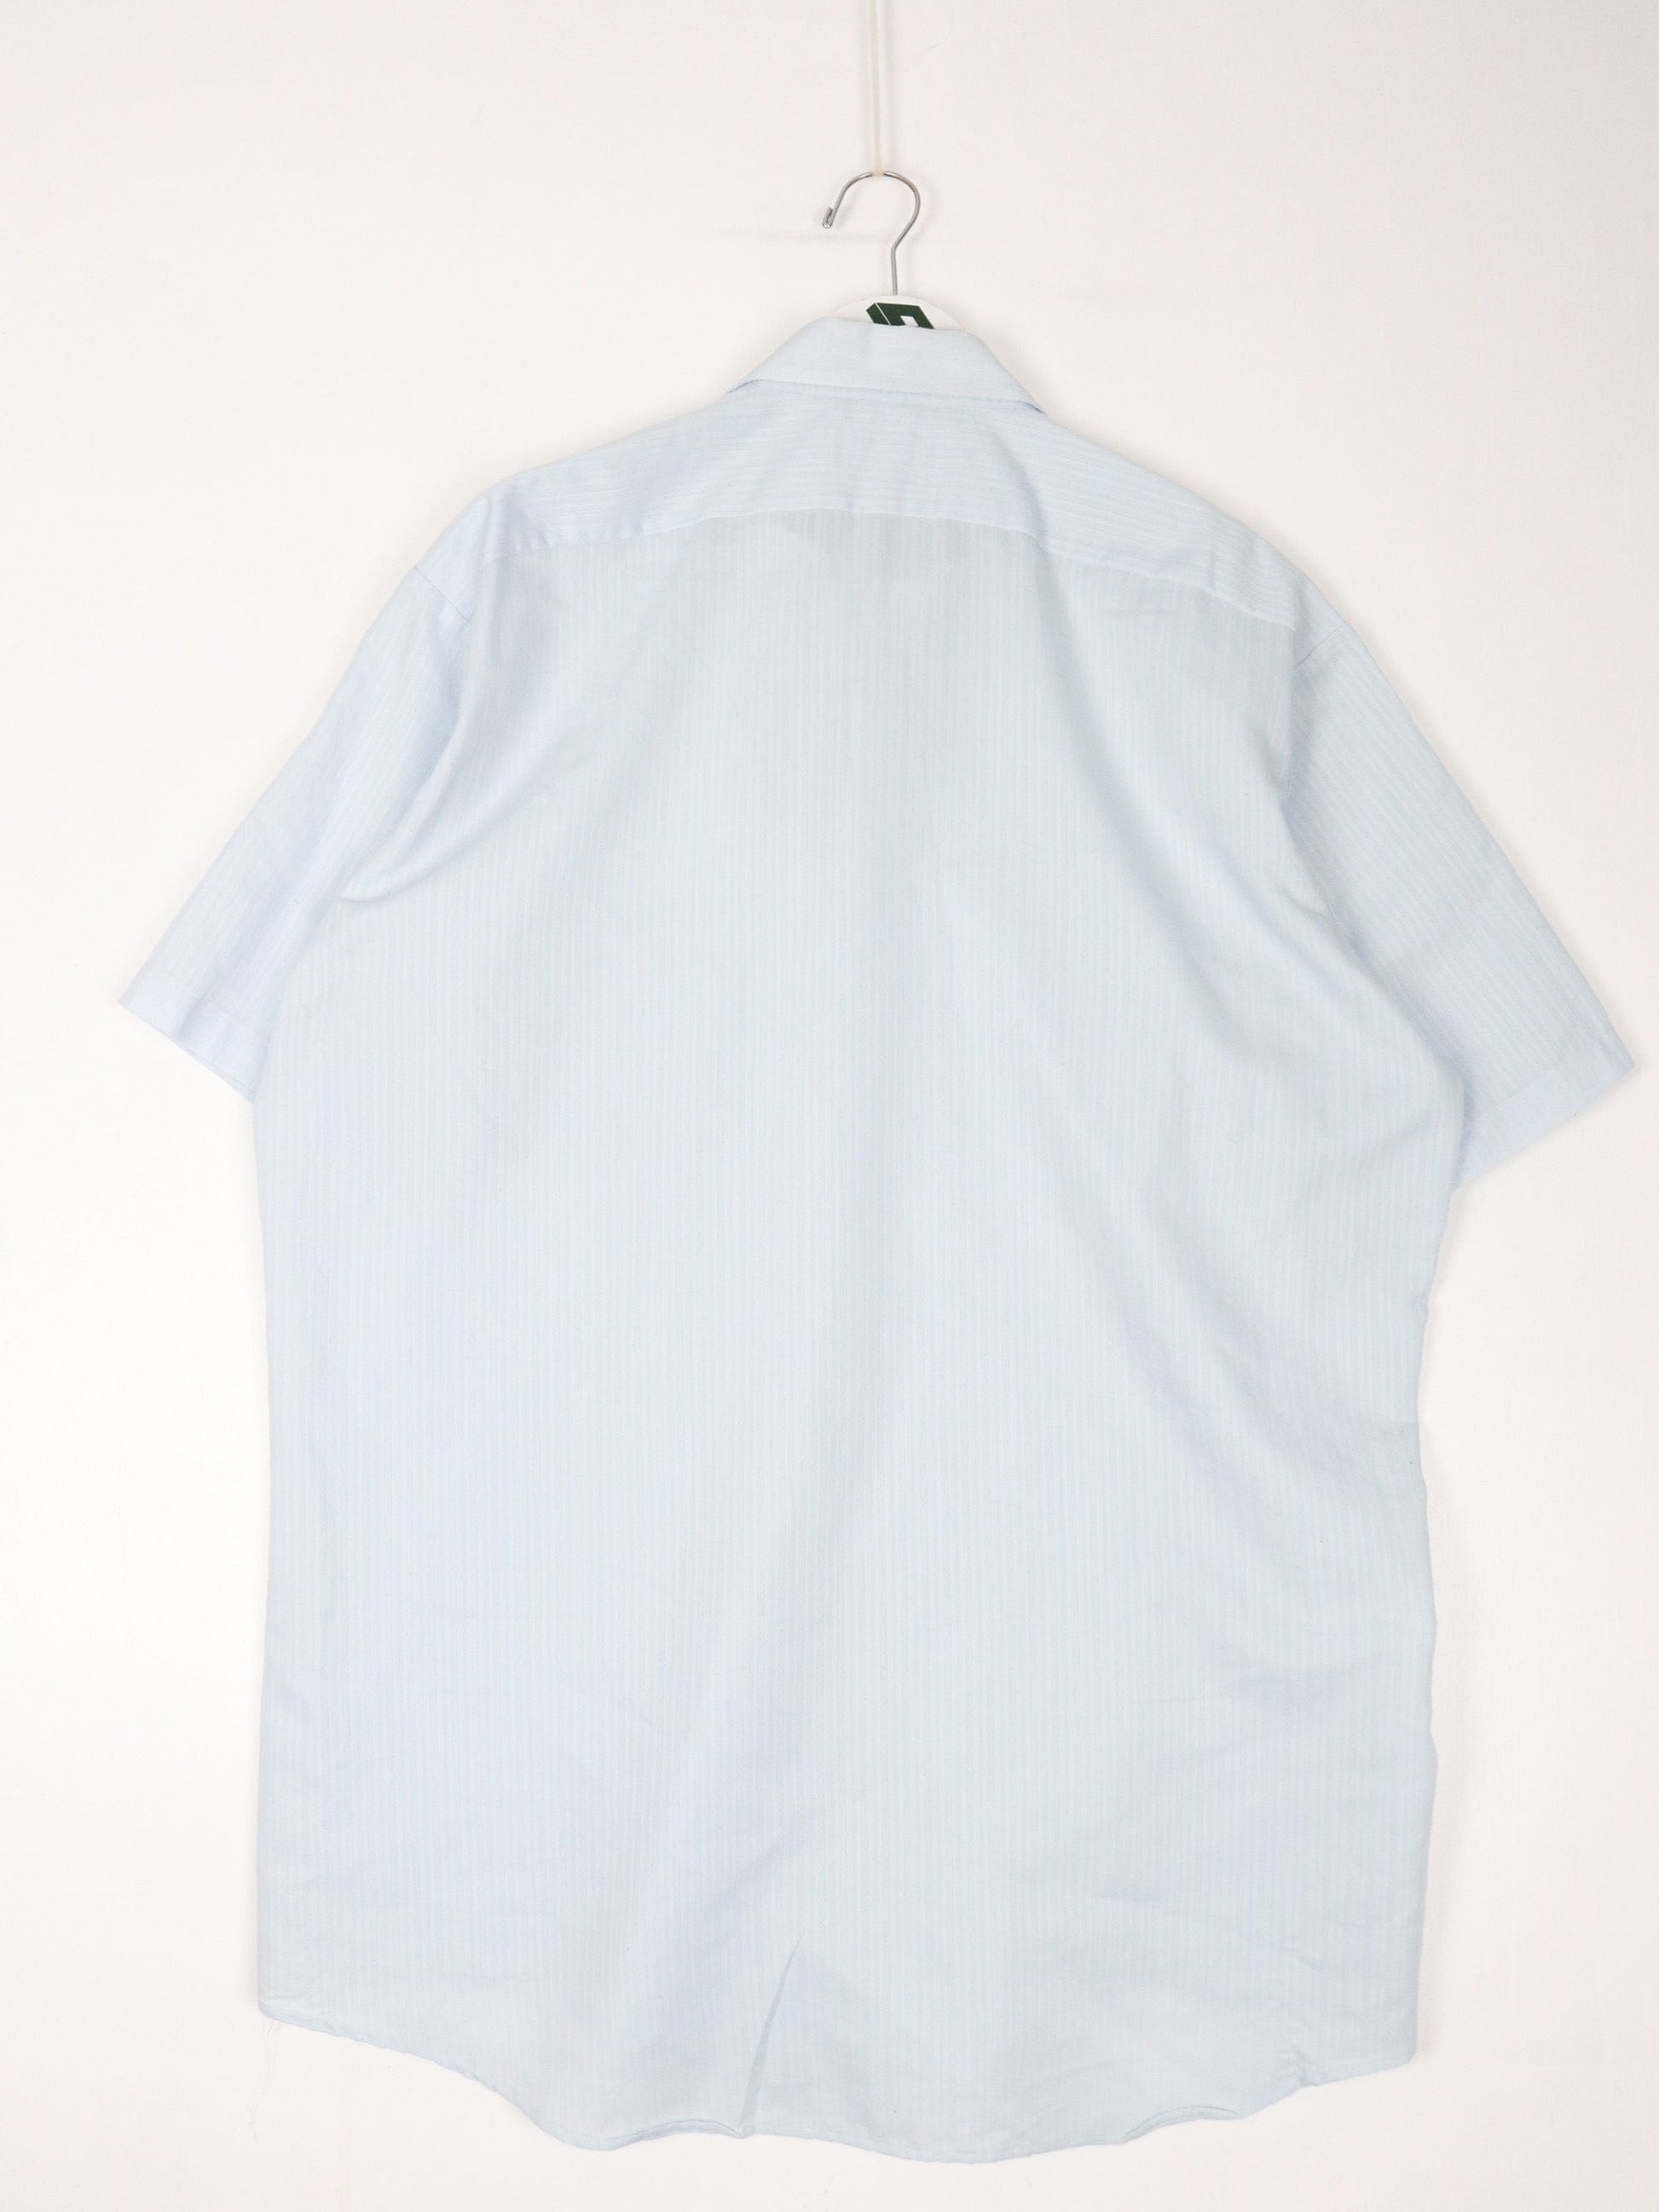 Other Button Up Shirts Vintage Manhatten Shirt Mens Tall XL 17 Blue Button Up Lightweight